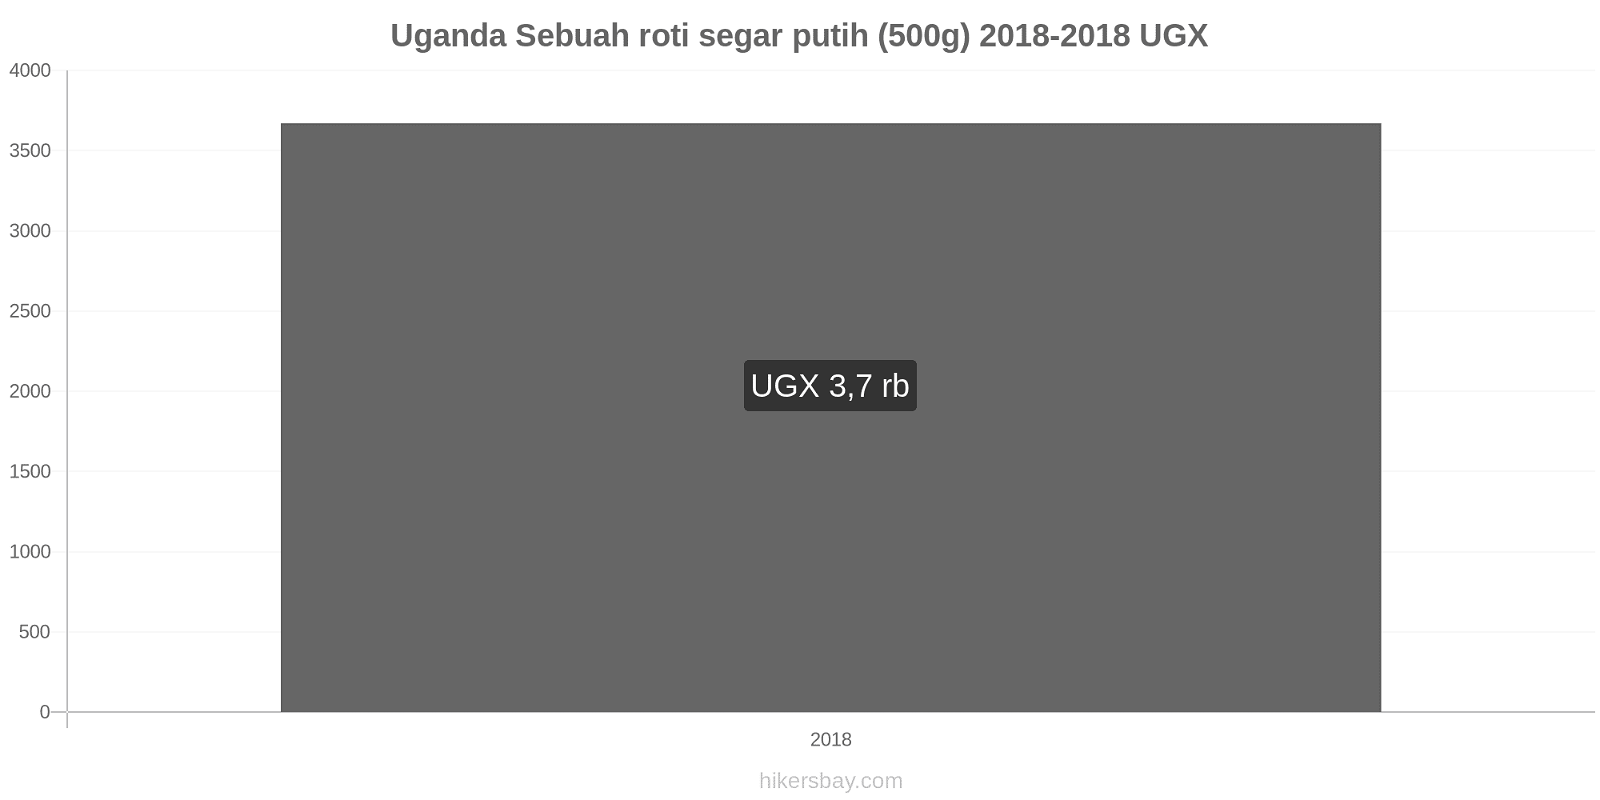 Uganda perubahan harga Sebuah roti segar putih (500g) hikersbay.com